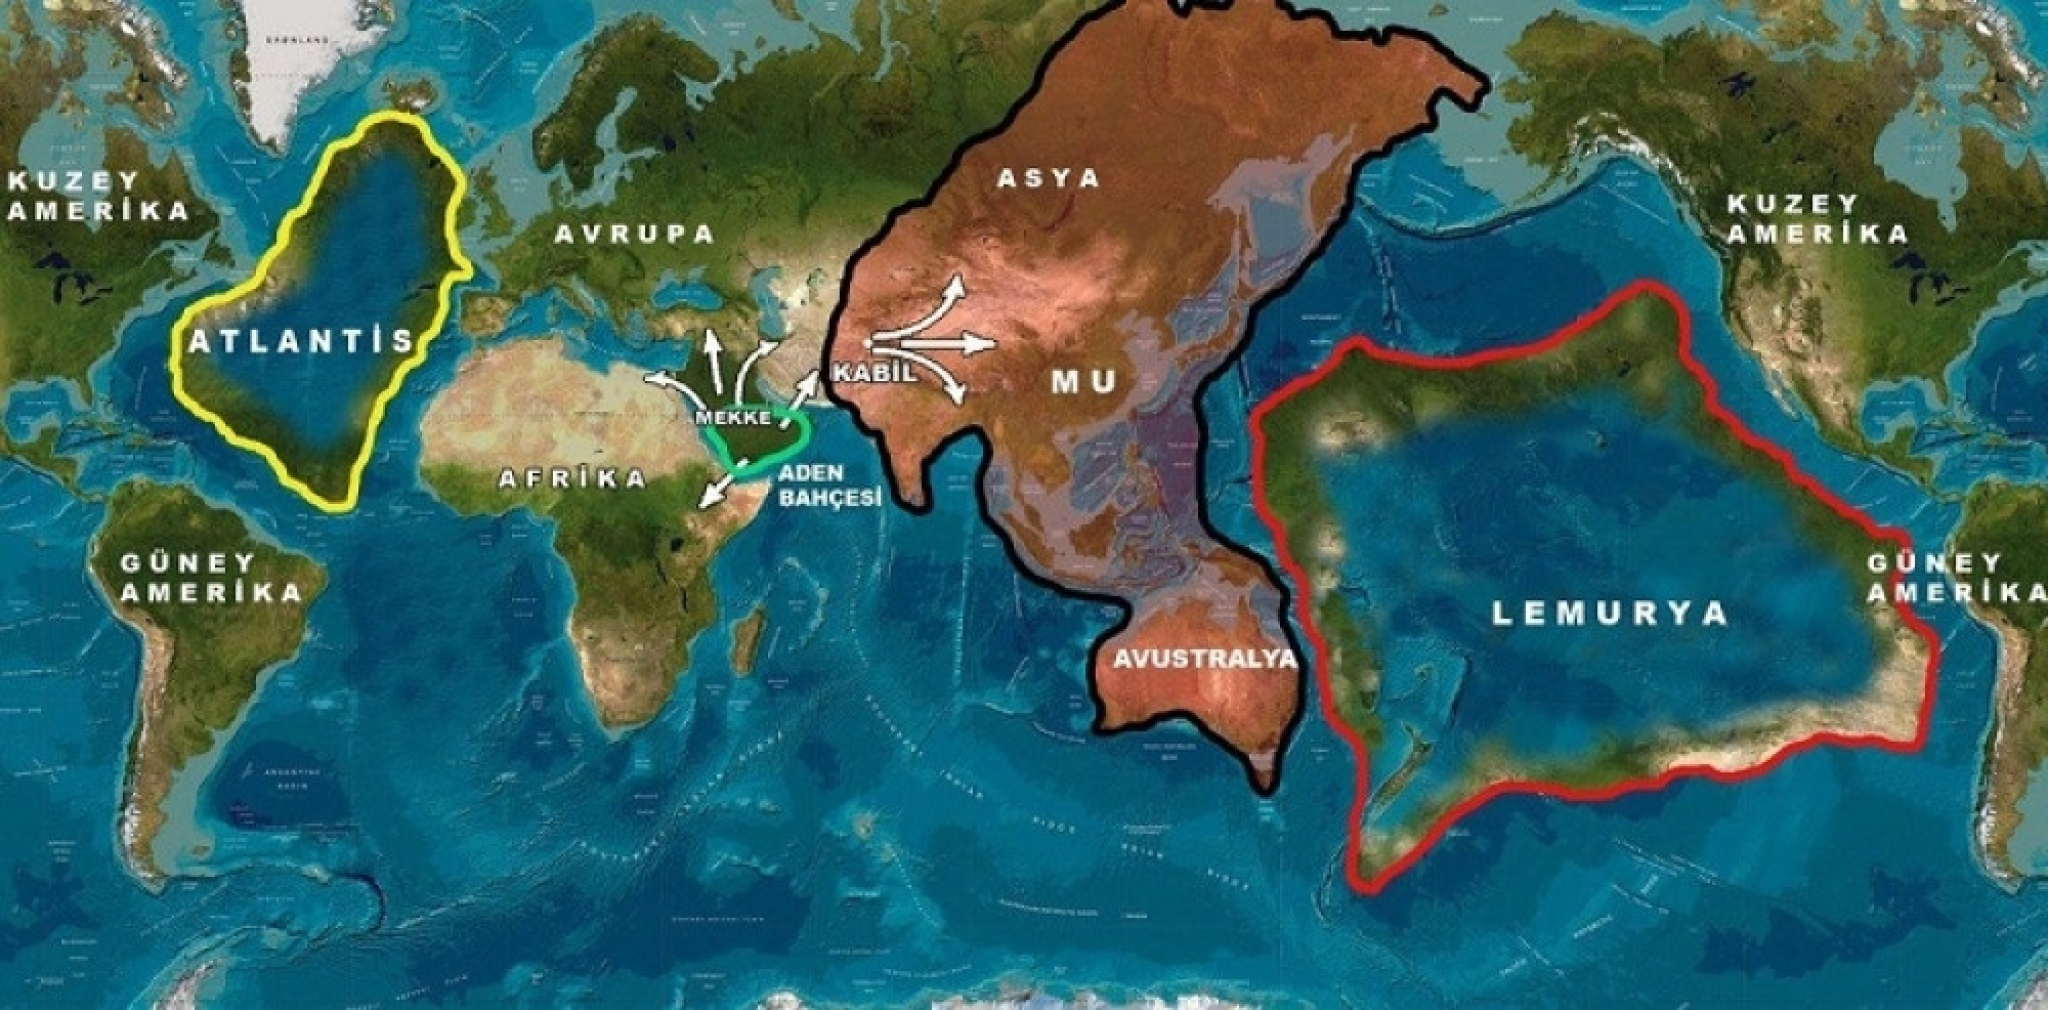 Lemurija, izgubljeni kontinenti, karta sveta